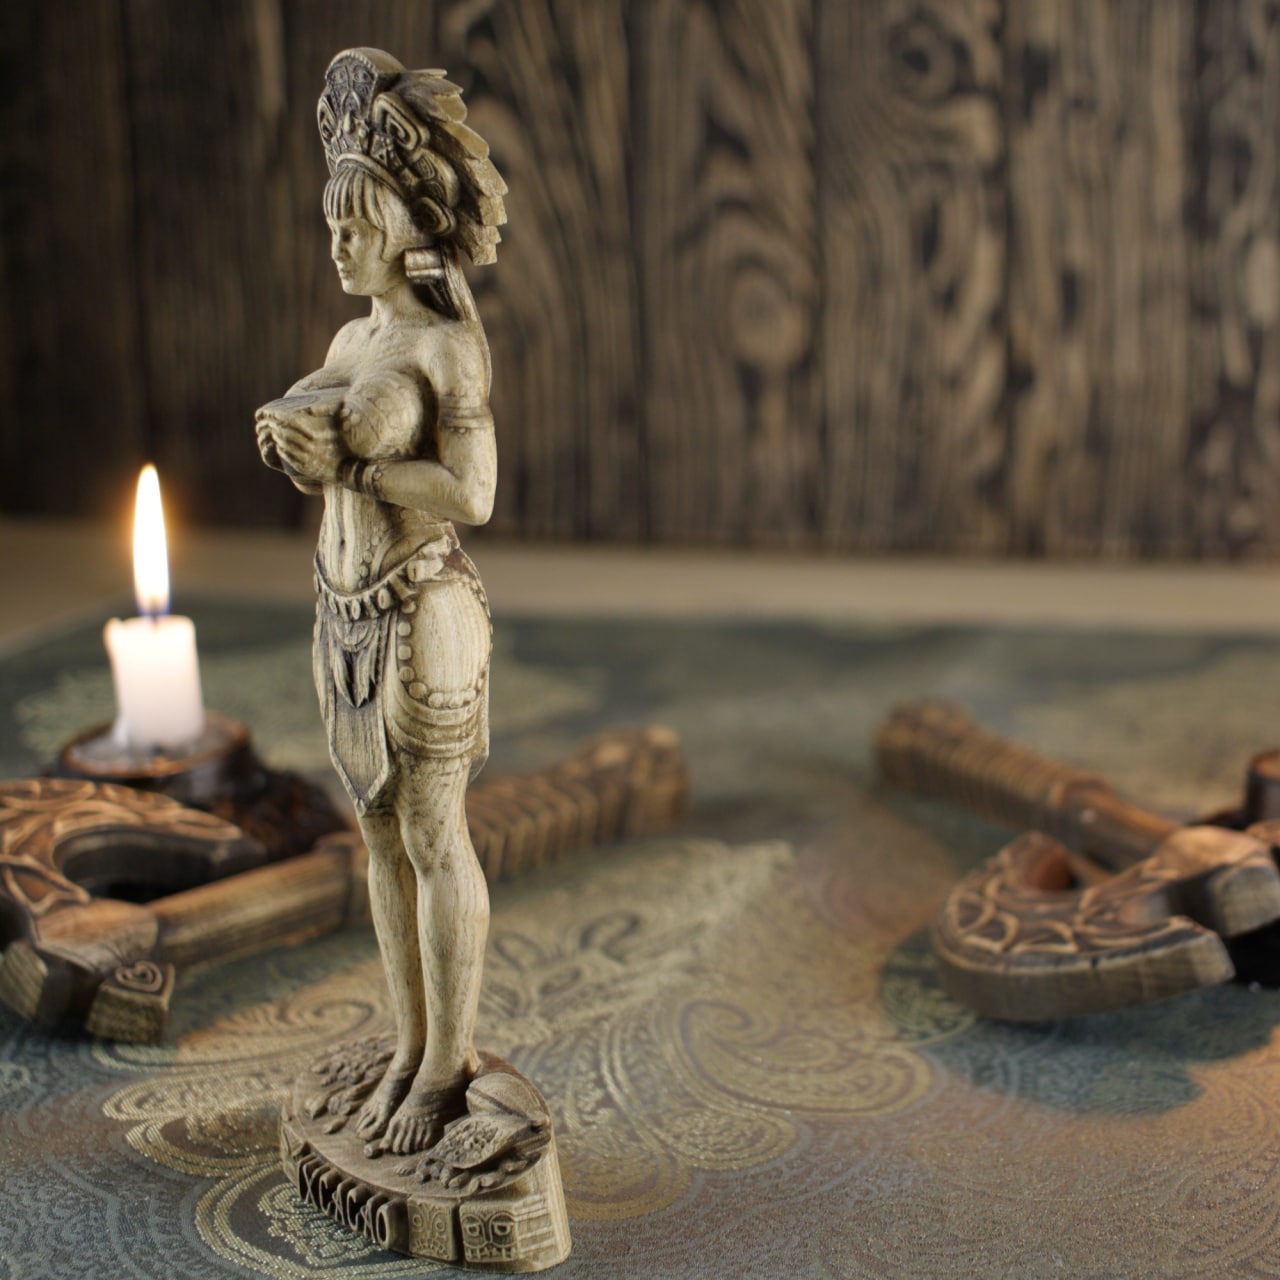 Wooden IxCacao Statue - Mayan Goddess Sculpture